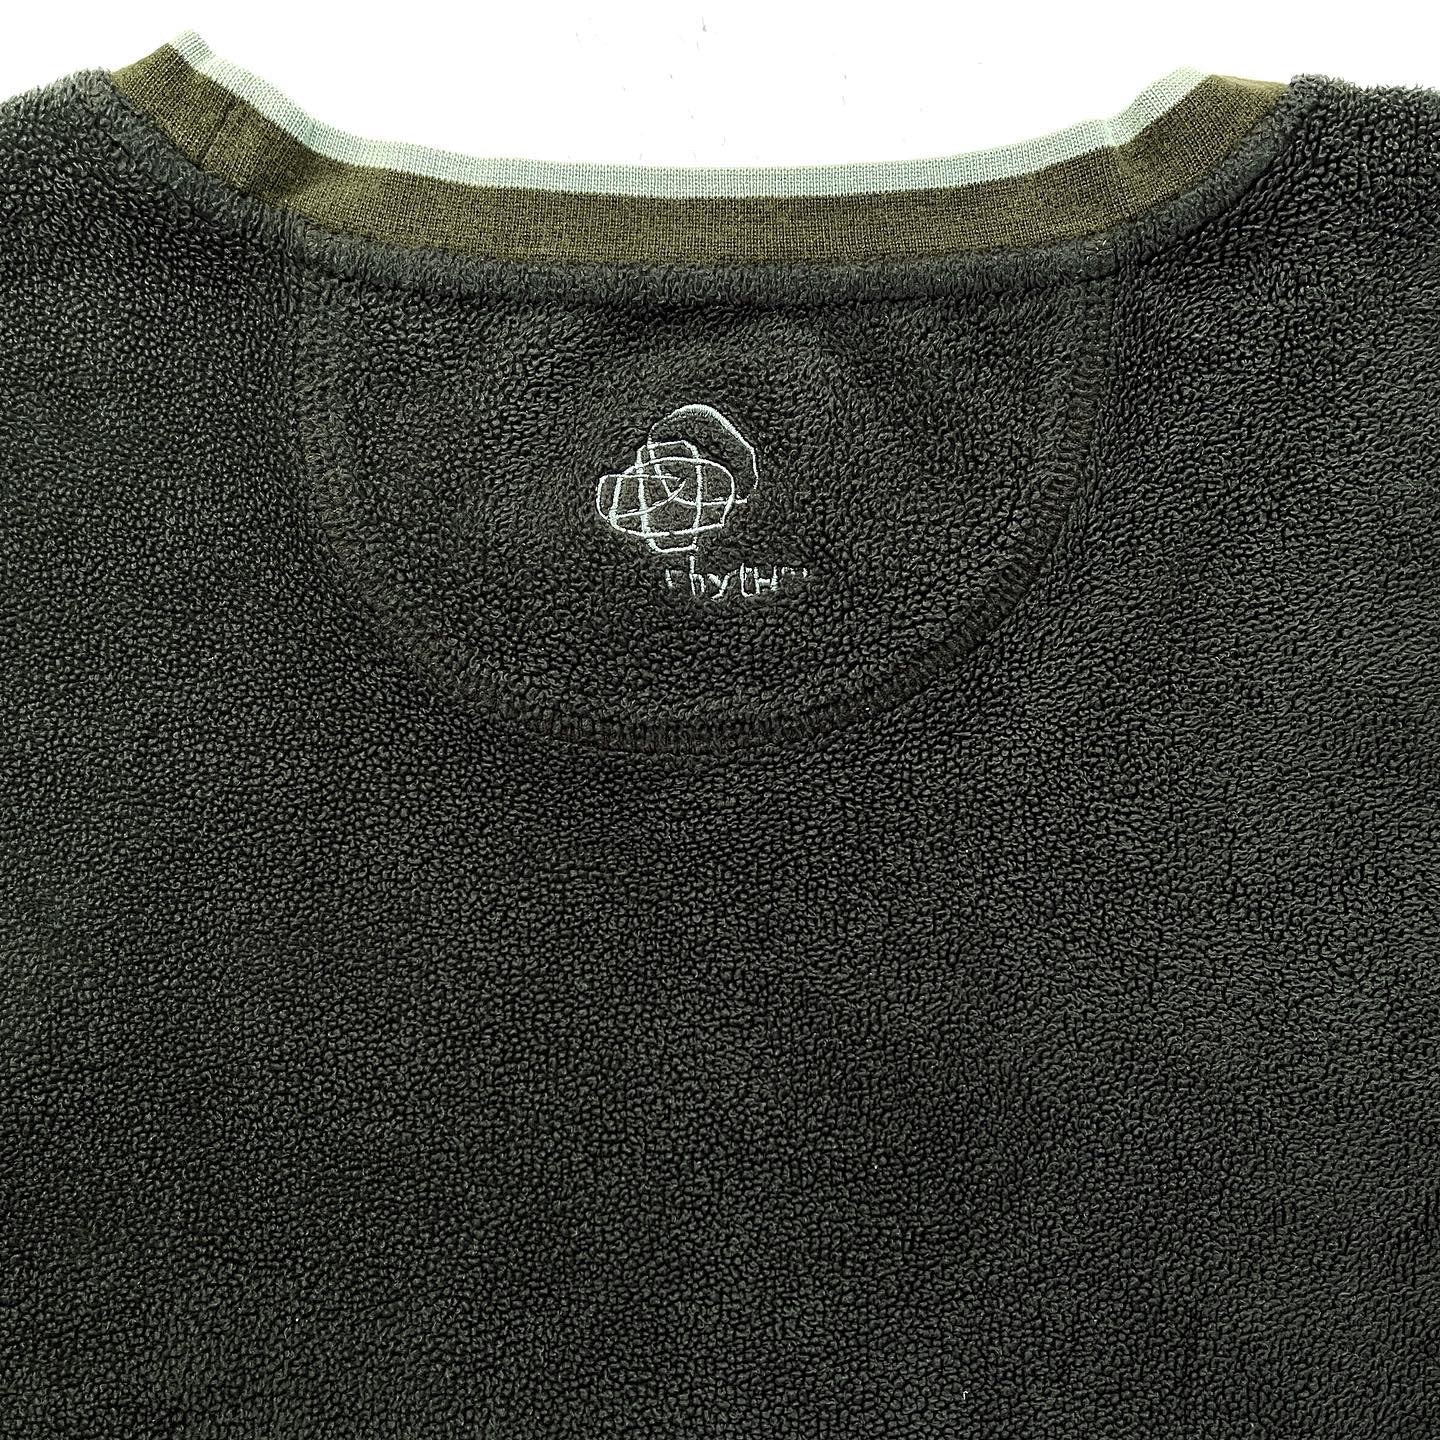 2005 Patagonia Rhythm Fleece Sweatshirt, Loden Heather (XL)